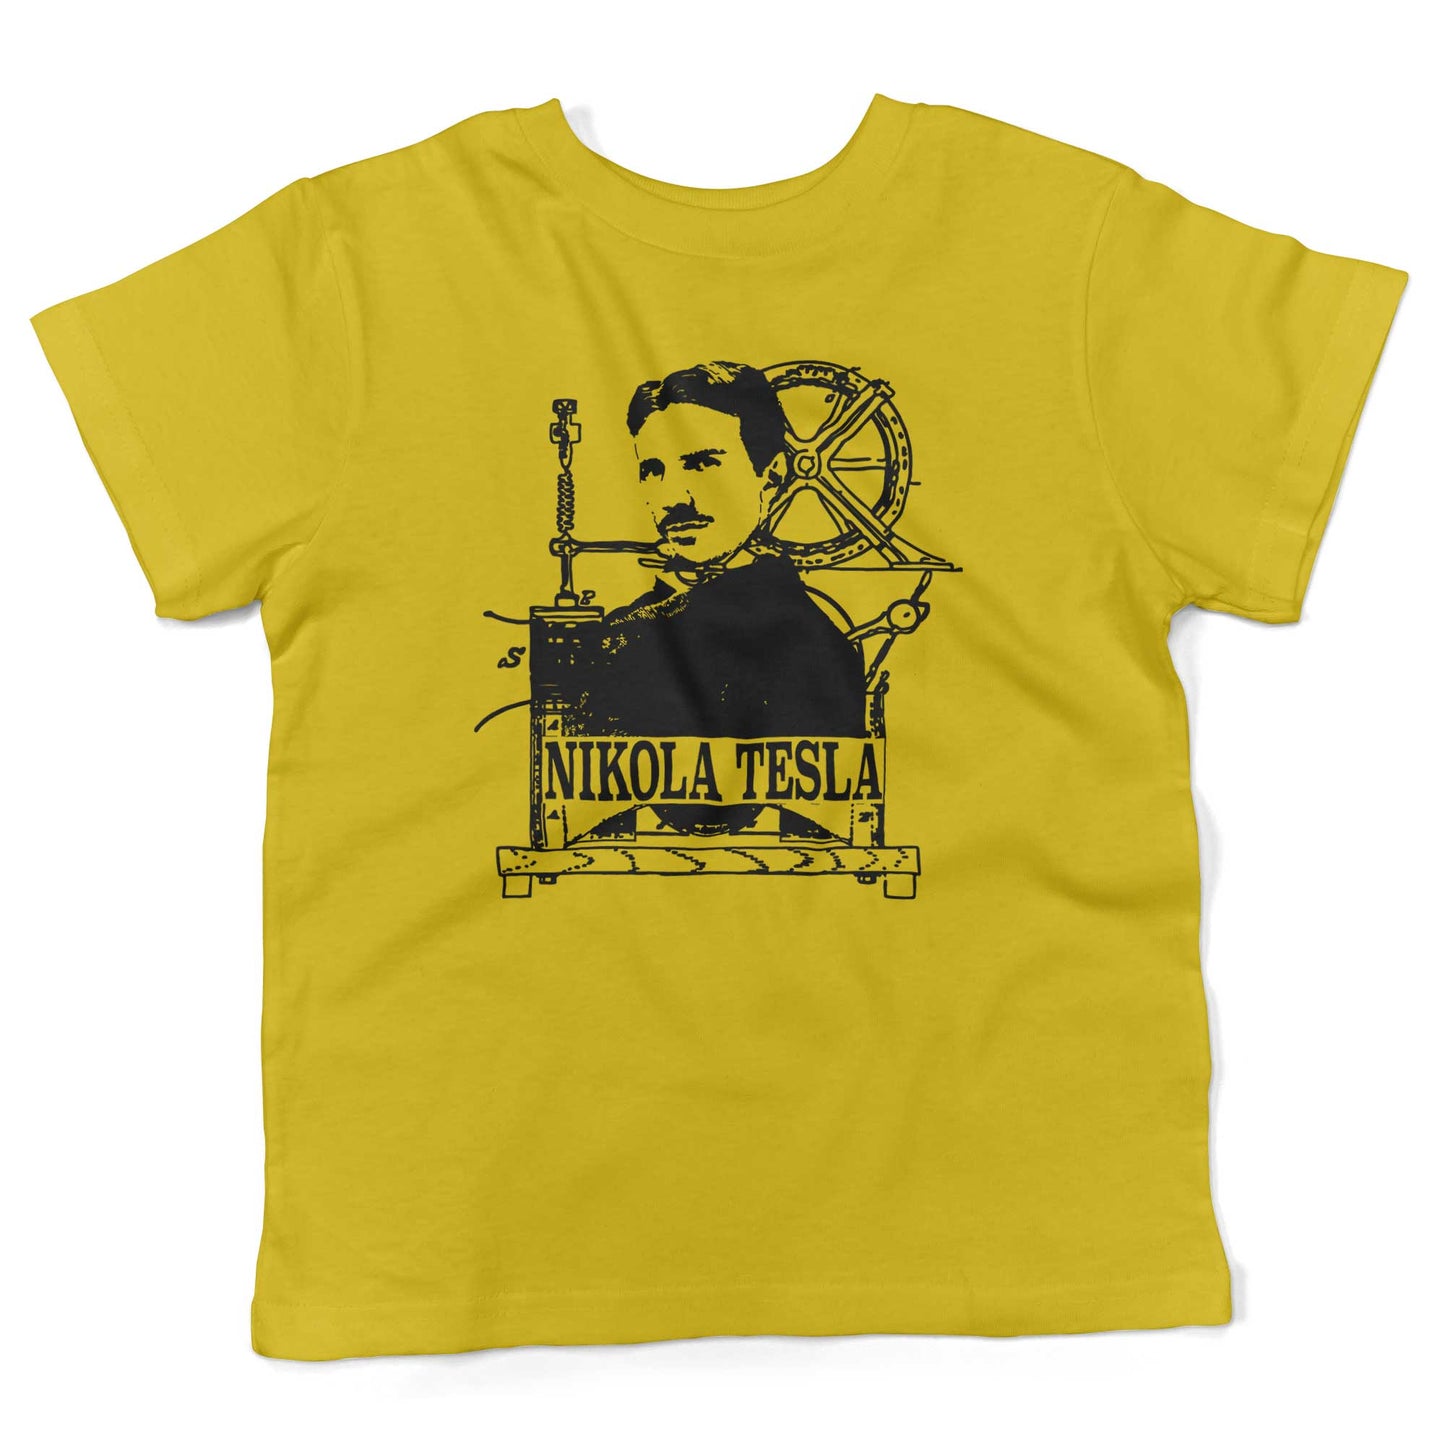 Nikola Tesla Toddler Shirt-Sunshine Yellow-2T